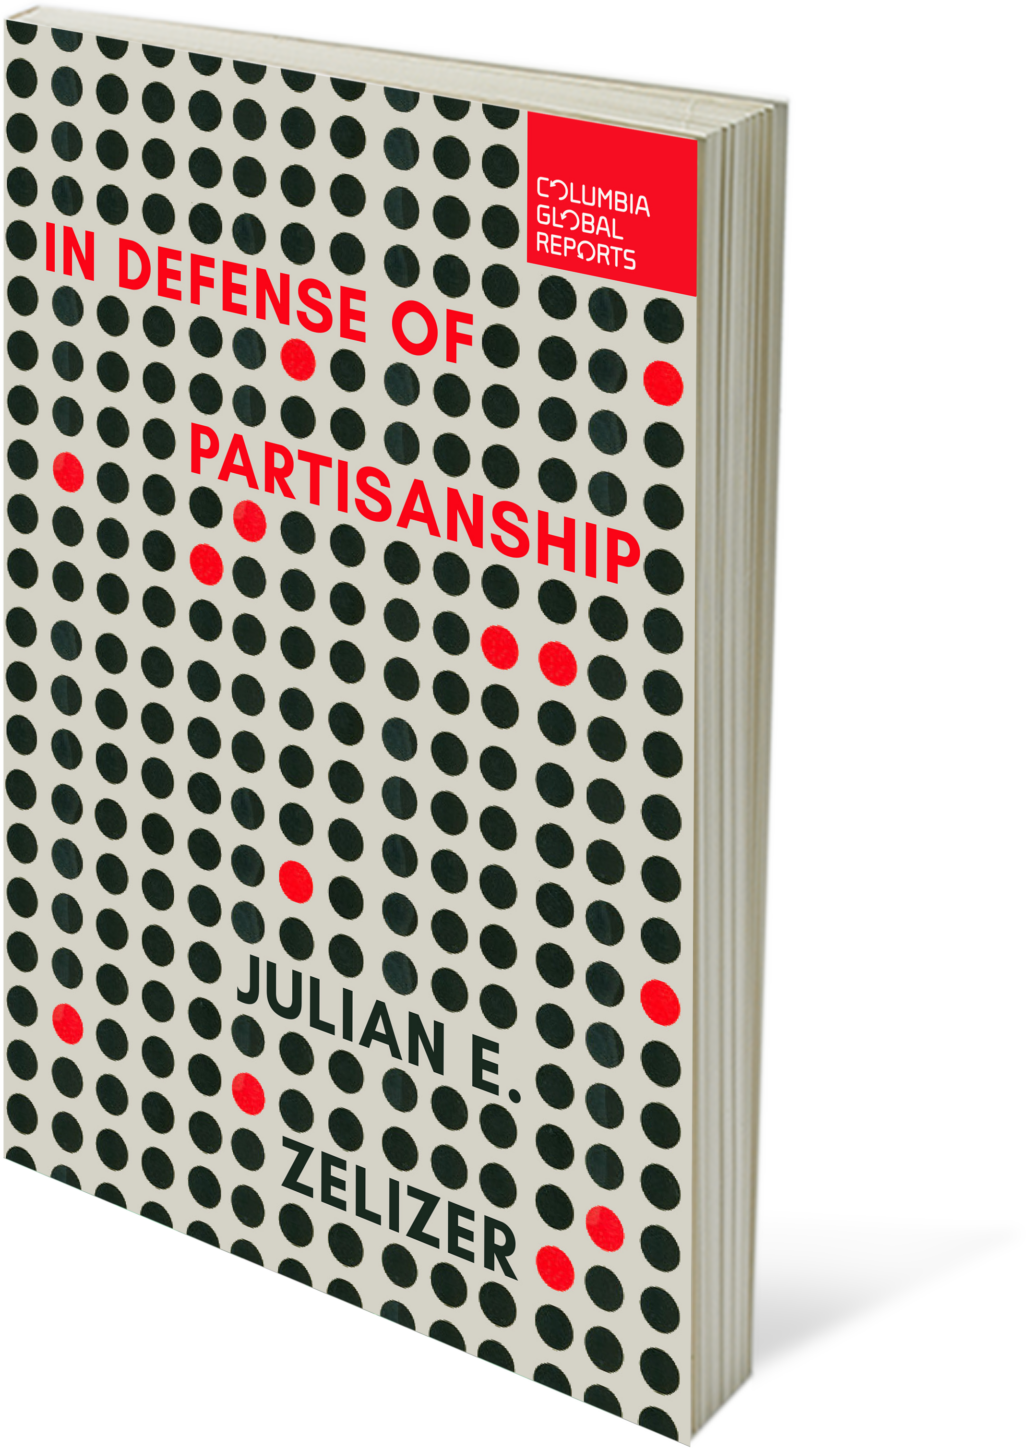 In Defense of Partisanship